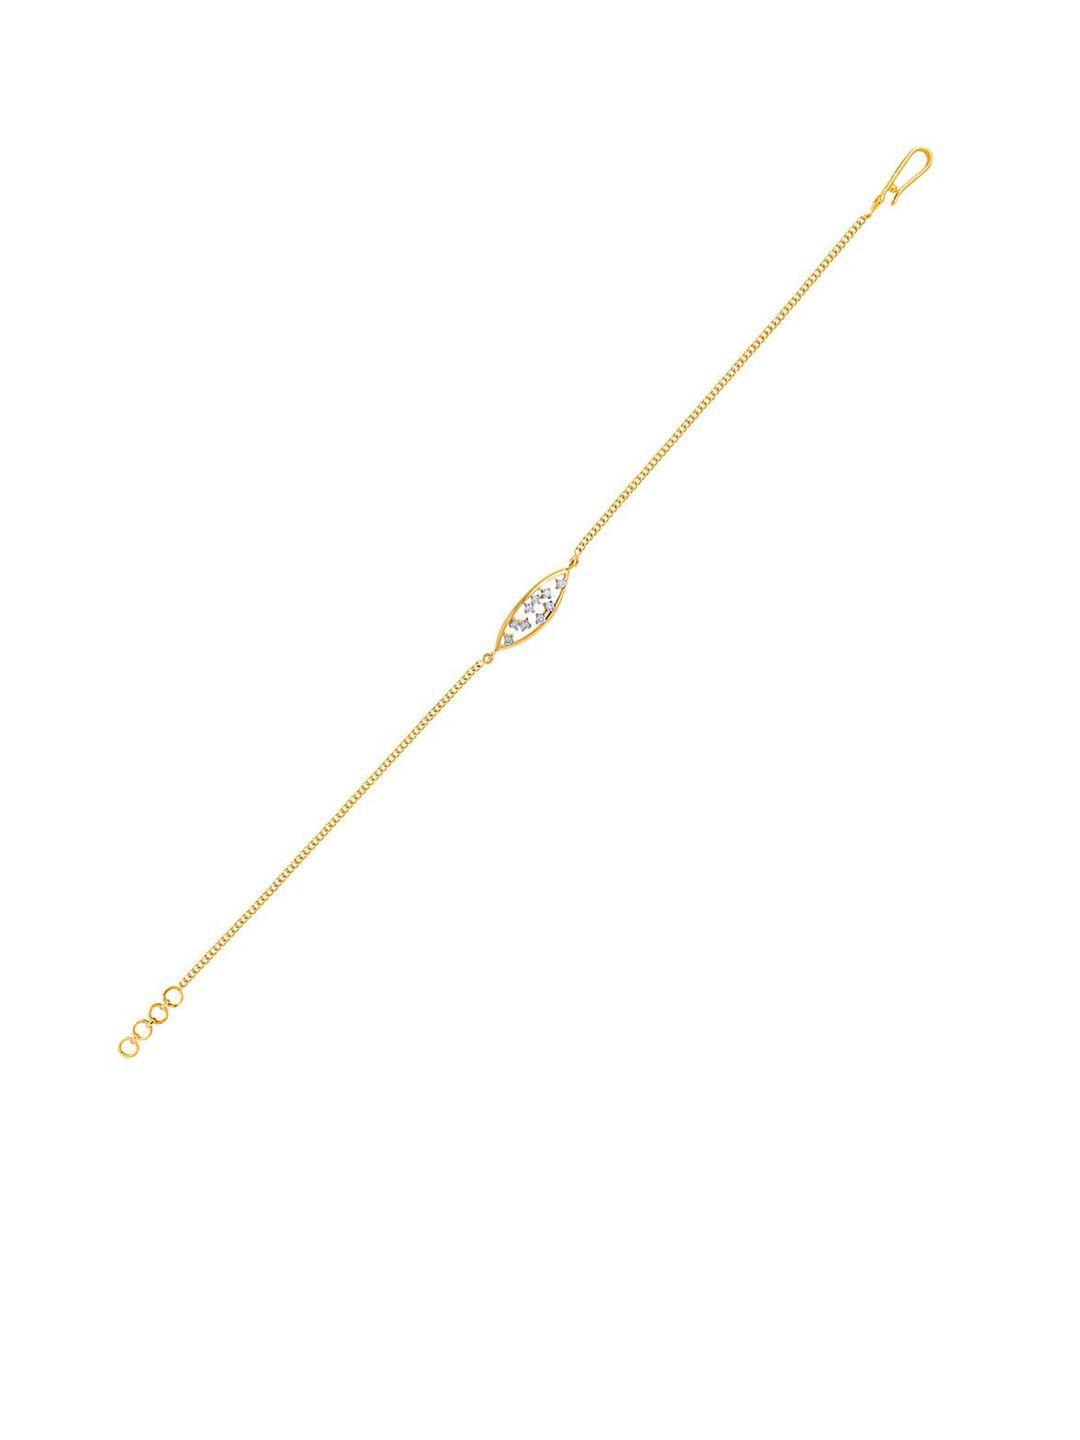 senco vision delight 18kt gold diamond-studded bracelet-2.3gm